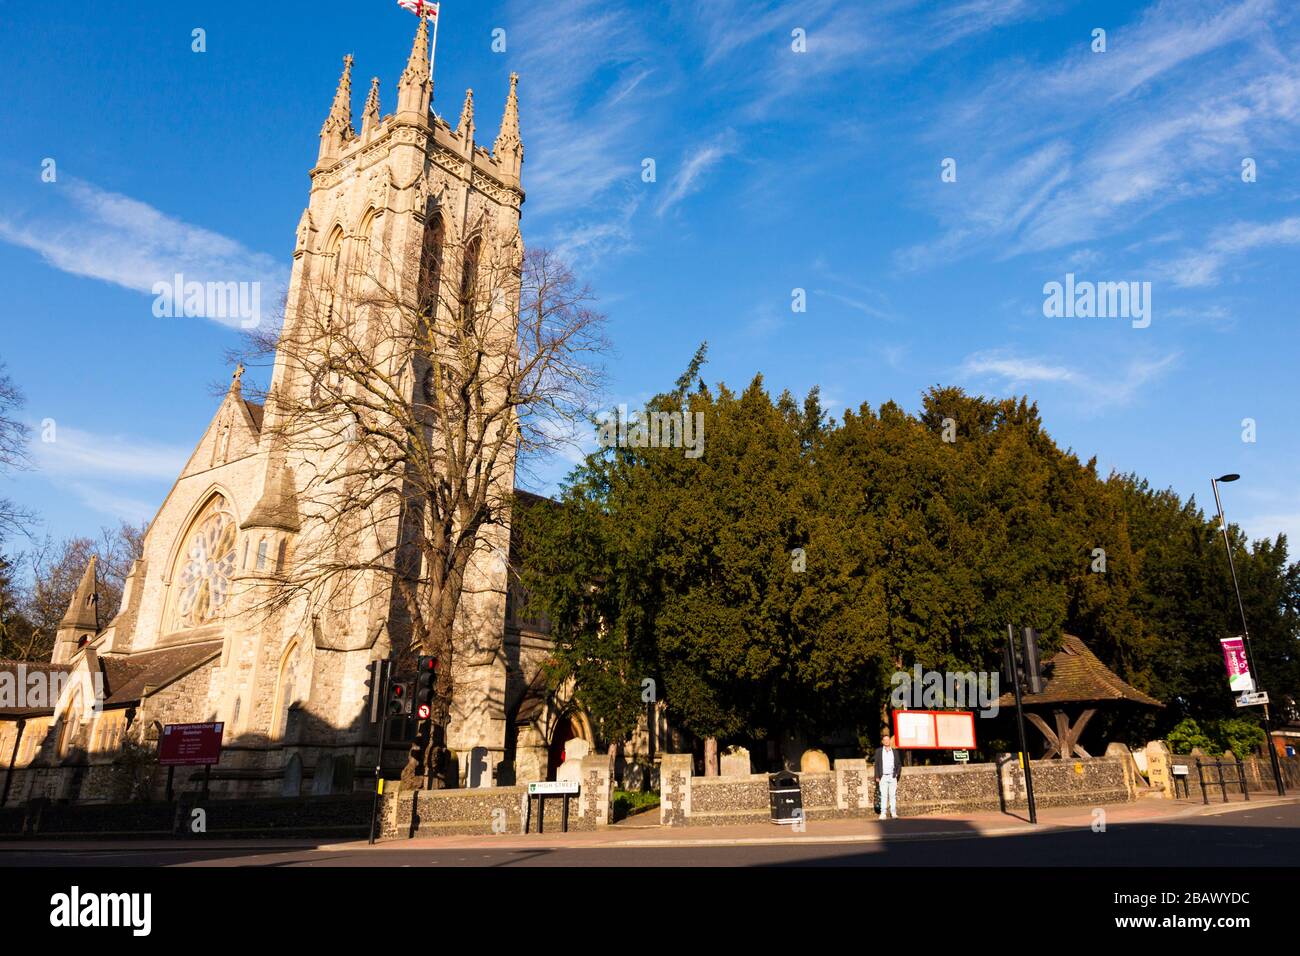 St George's Church, Beckenham, London, UK Stock Photo